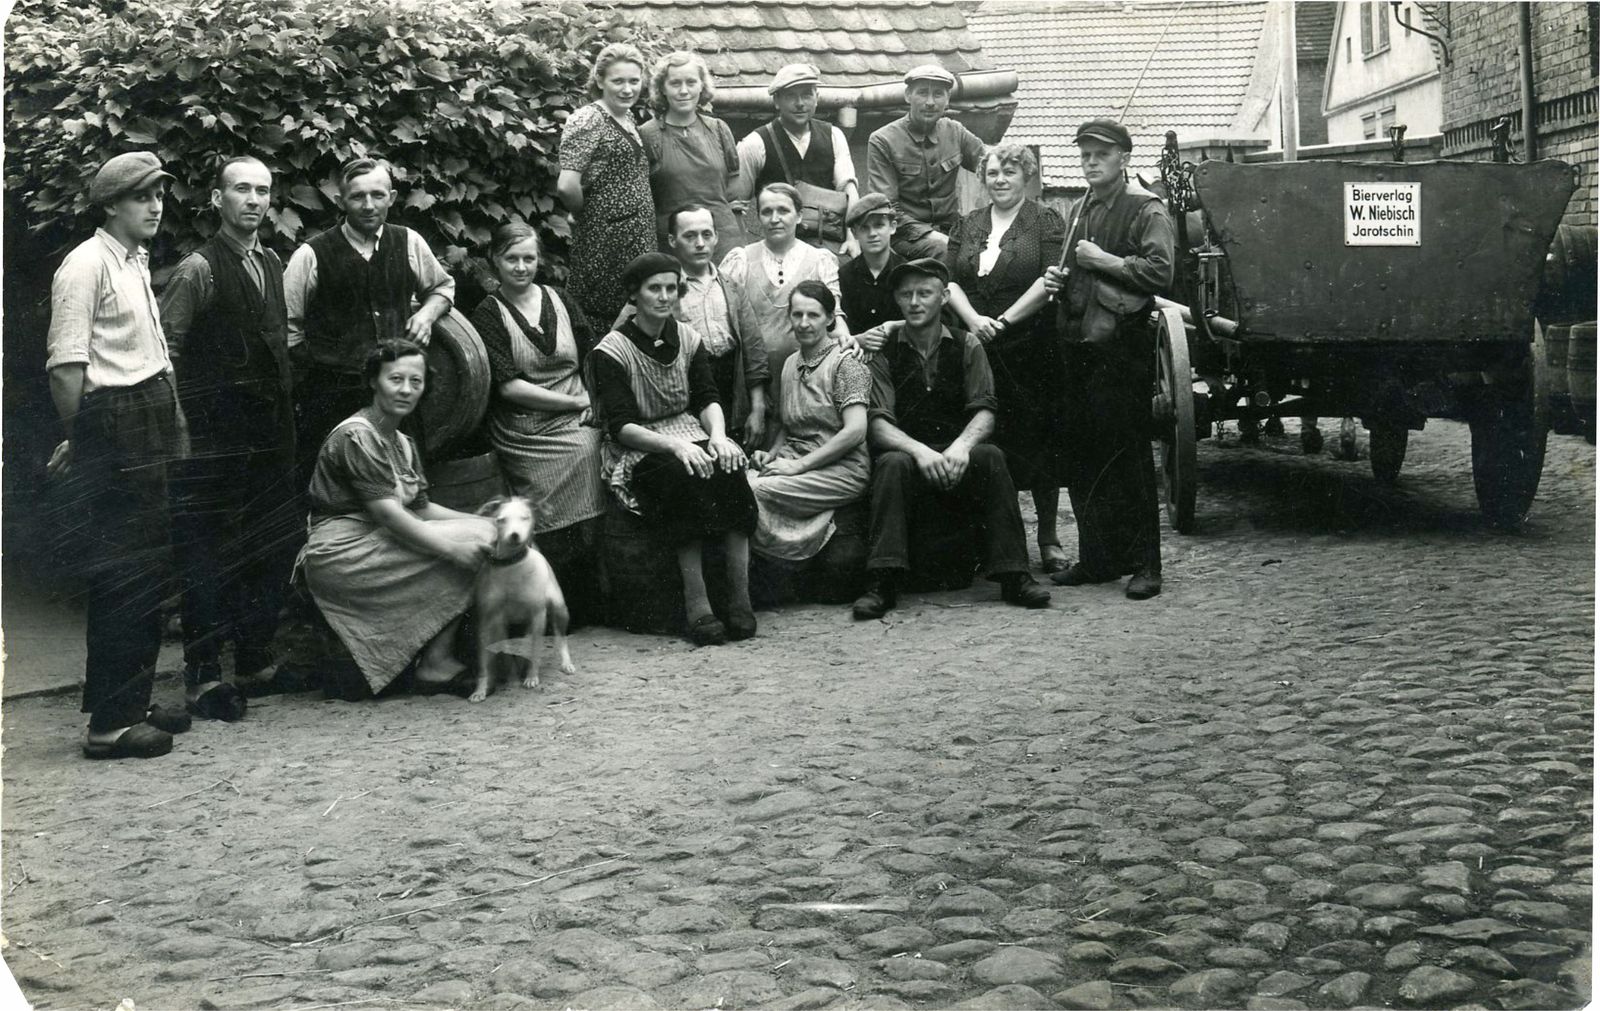 Pracownicy browaru W. Niebisch (przed wojną Józefy Hager) w Jarocinie, Muzeum Regionalne w Jarocinie